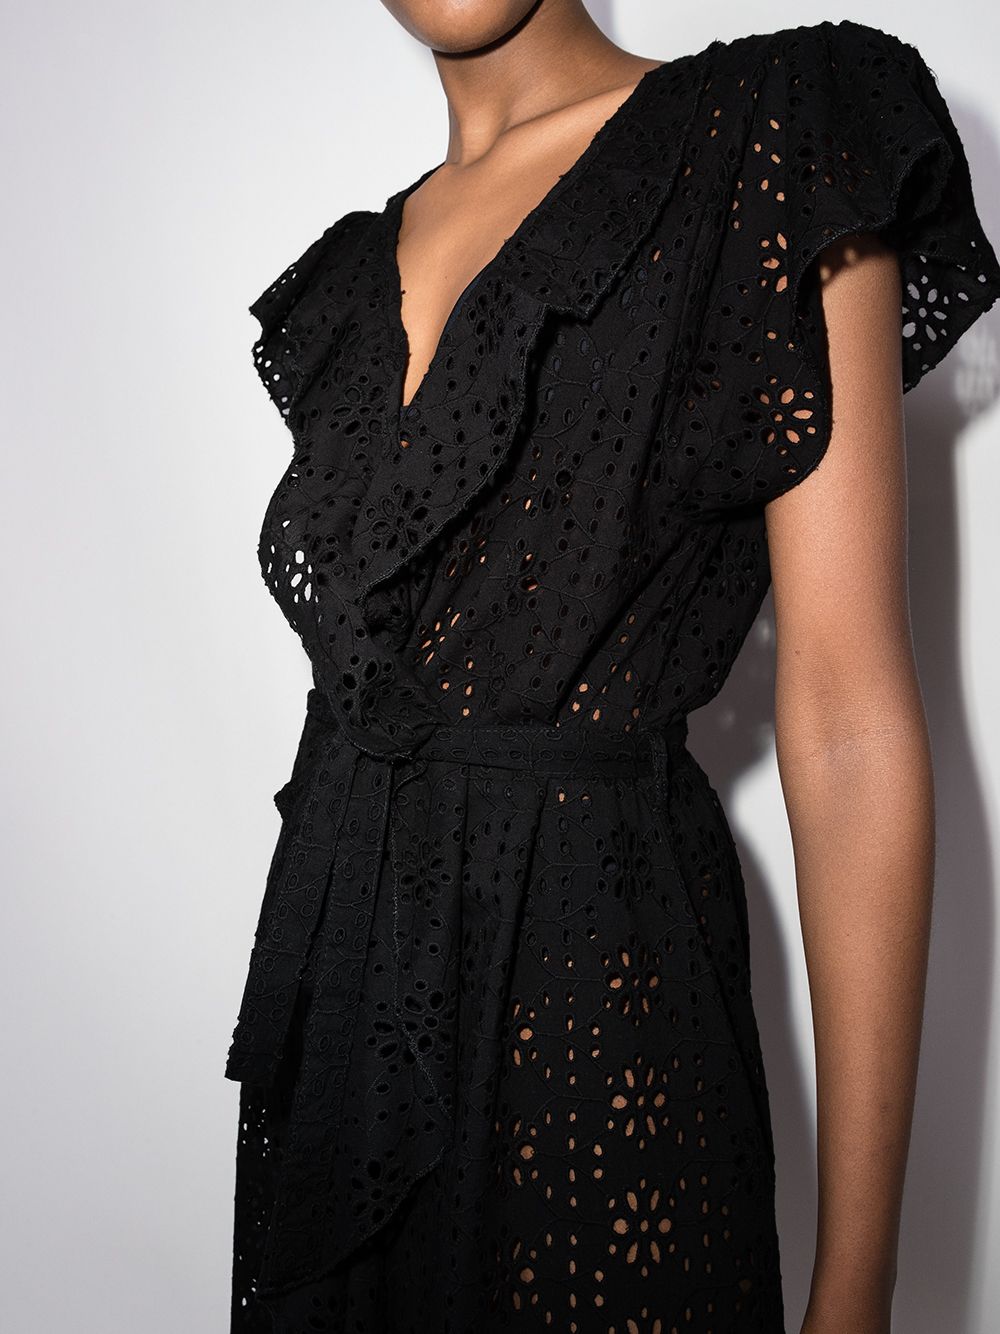 фото Melissa odabash платье макси brianna с английской вышивкой